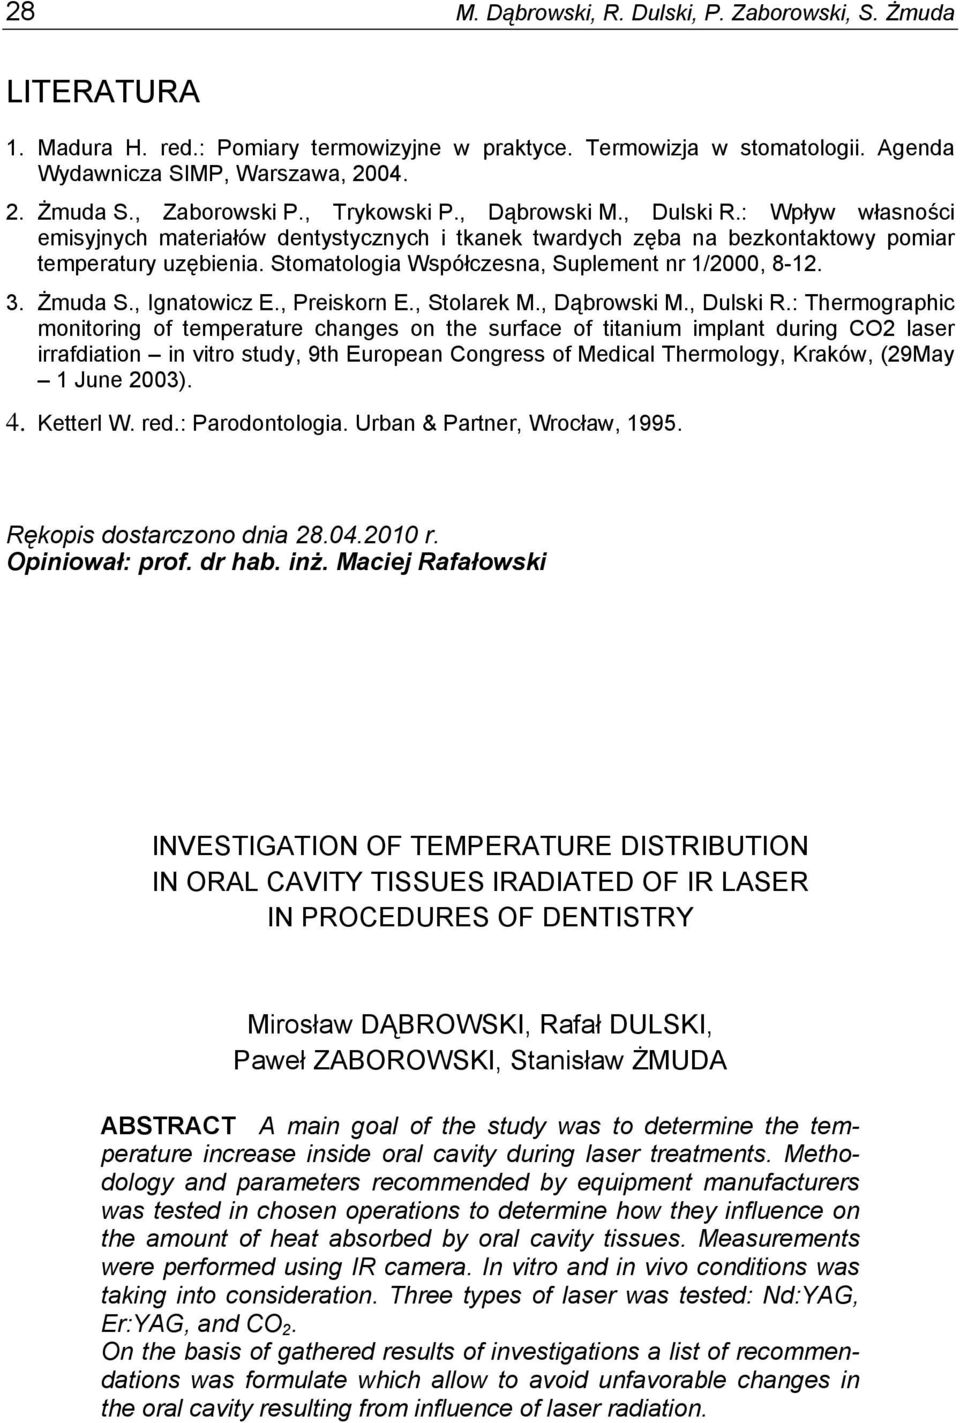 Stomatologia Współczesna, Suplement nr 1/2000, 8-12. 3. Żmuda S., Ignatowicz E., Preiskorn E., Stolarek M., Dąbrowski M., Dulski R.